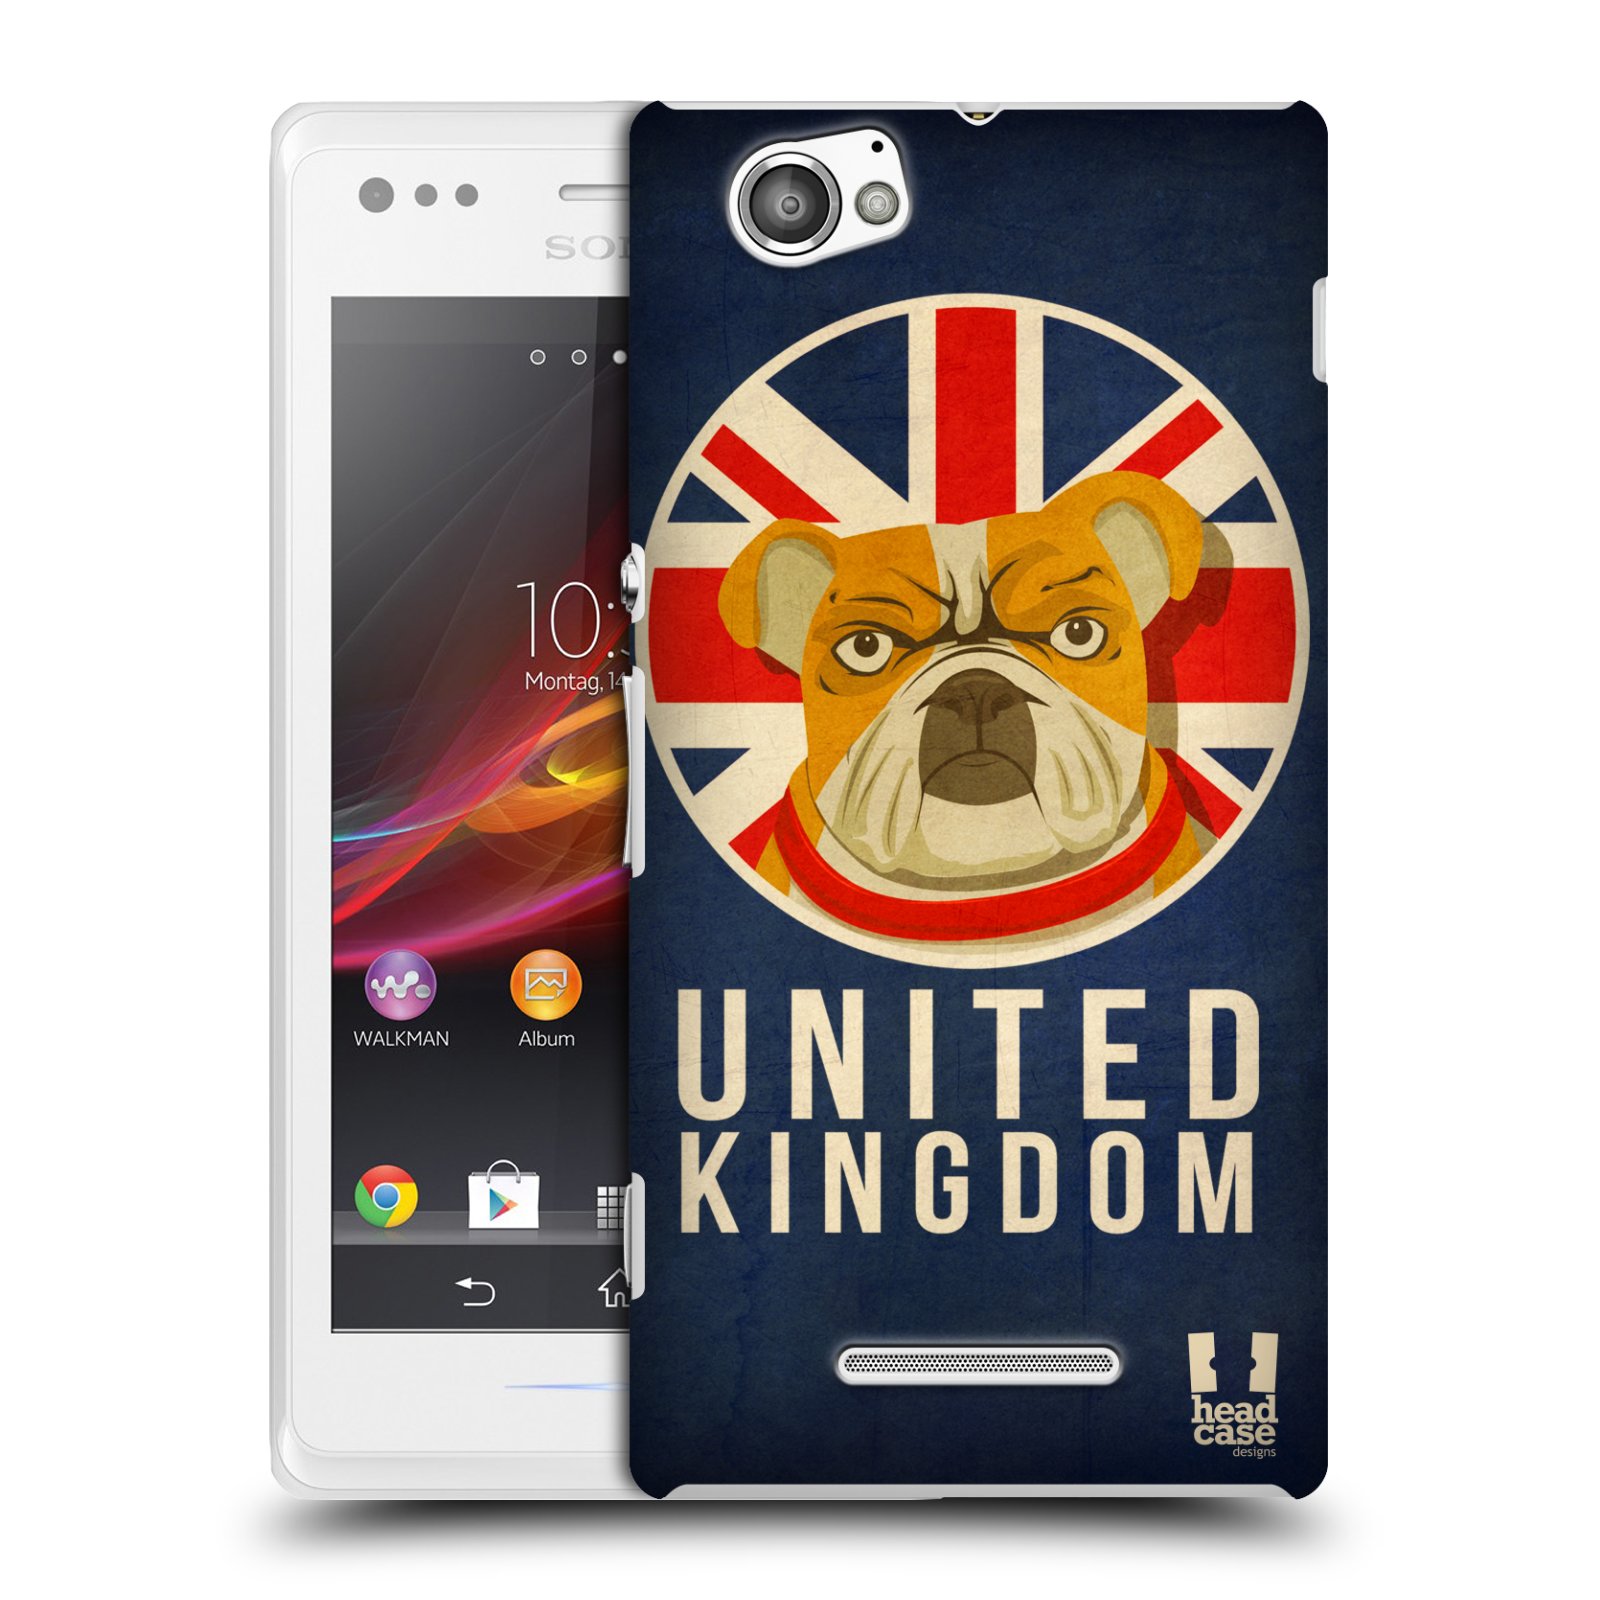 HEAD CASE plastový obal na mobil Sony Xperia M vzor Patriotismus zvíře symbol Buldok UK